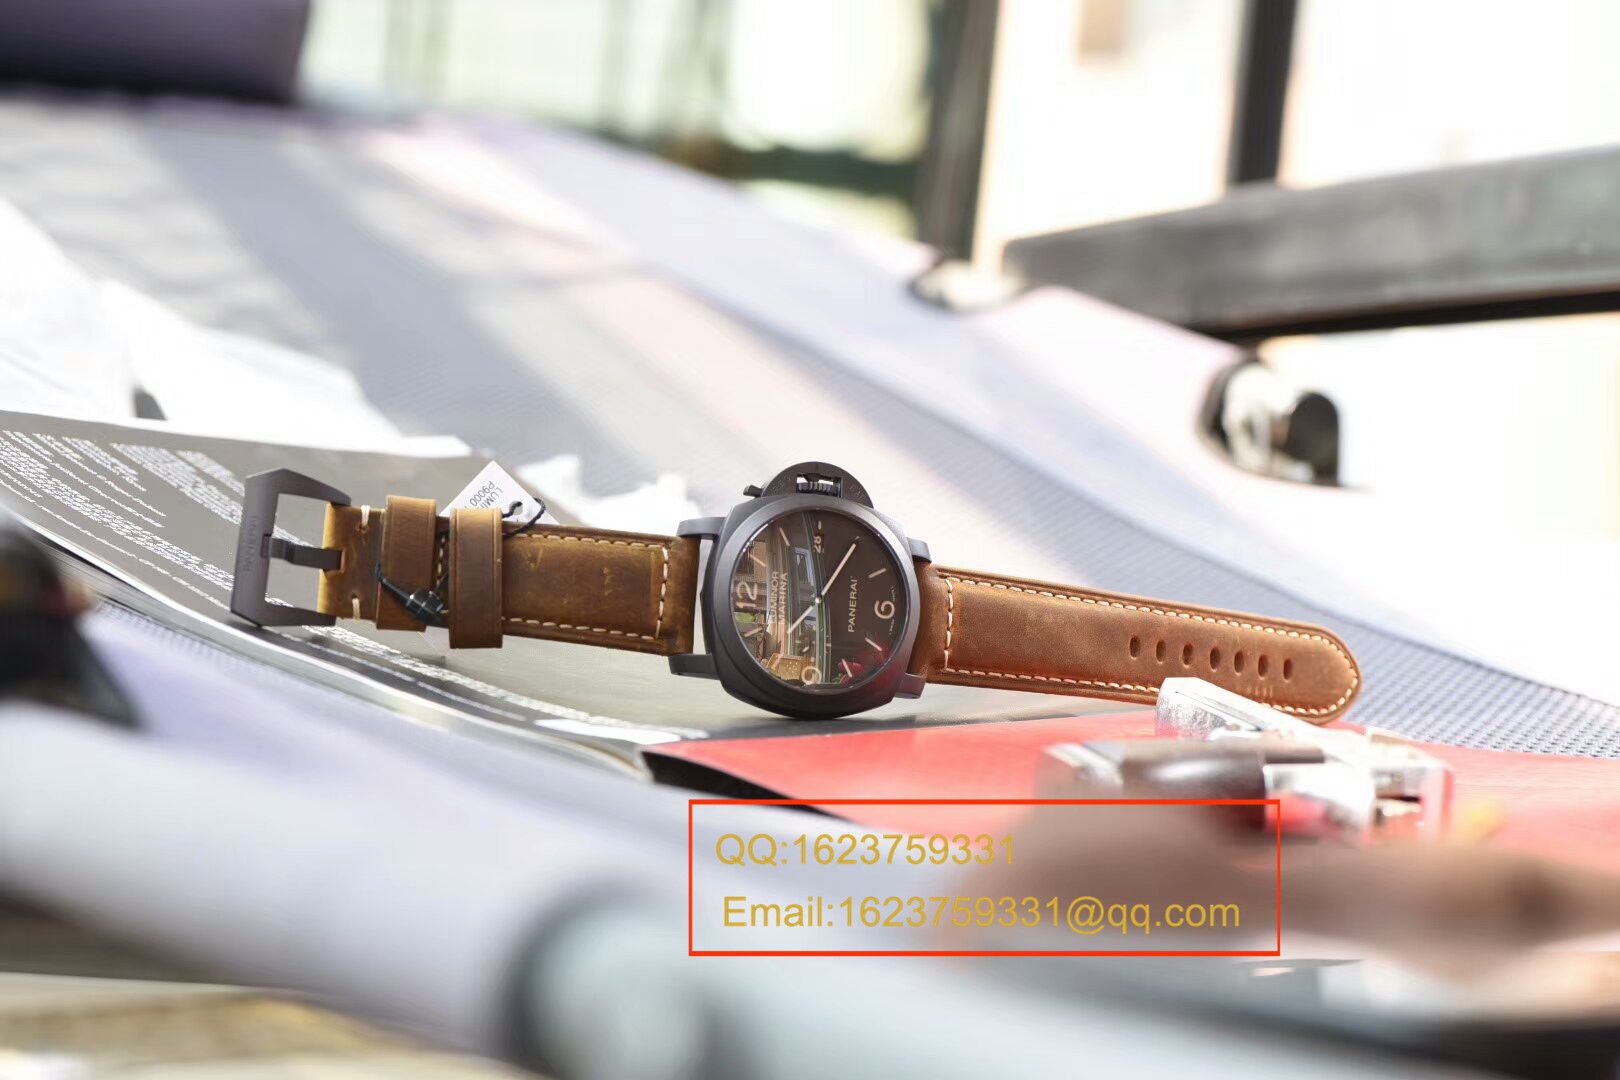 视频评测沛纳海LUMINOR 1950系列PAM 00386腕表【VS厂一比一复刻手表】 / VSPAM00386MM